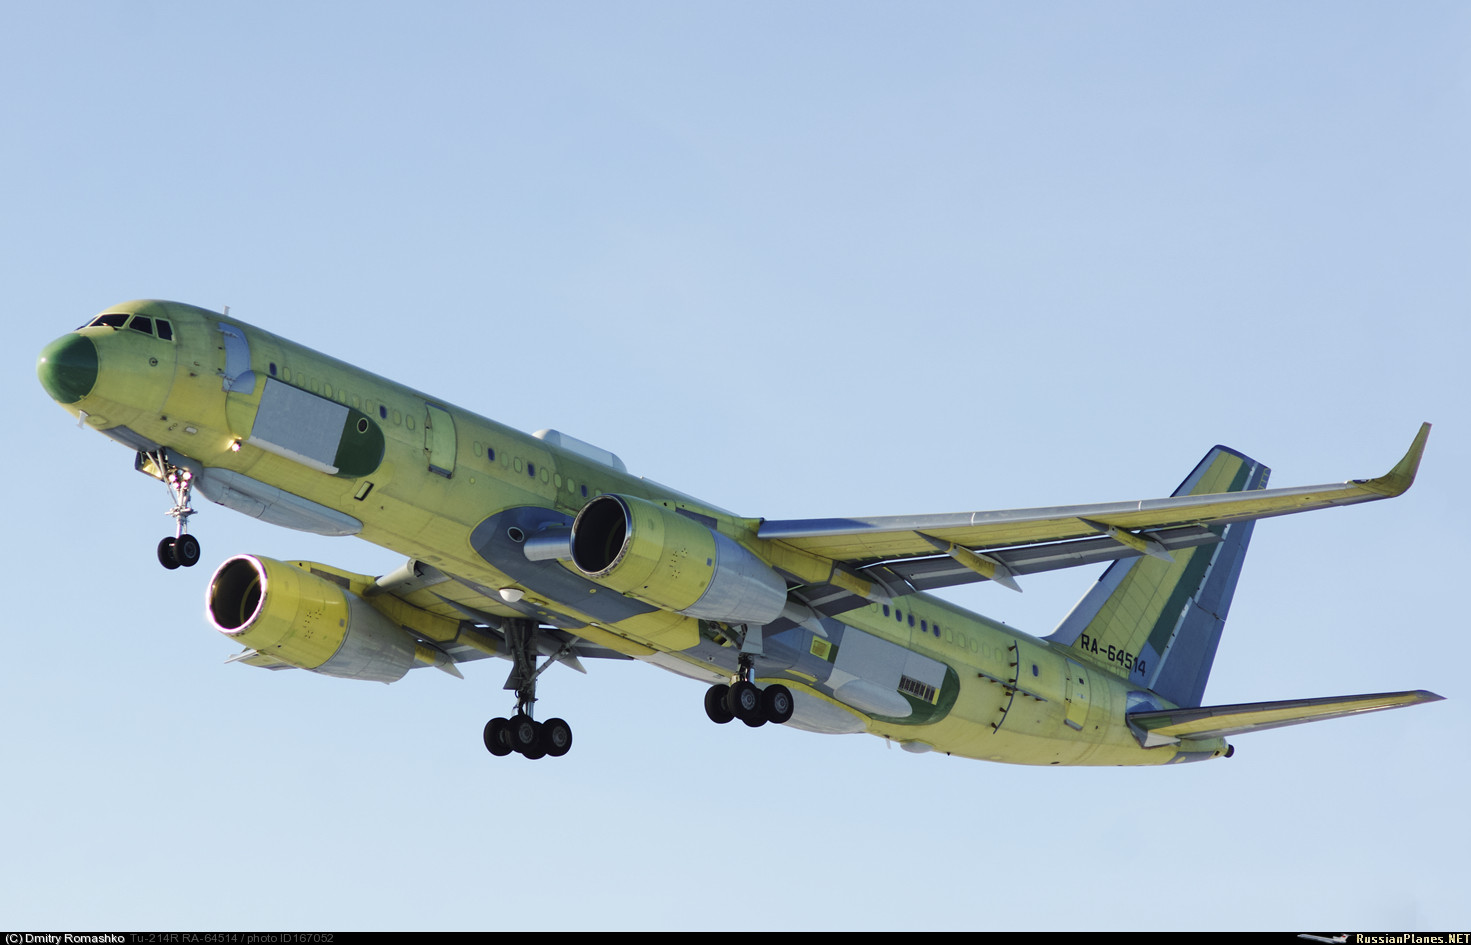 Второй самолет дальней разведки Ту-214Р борт RA-64514 на испытаниях